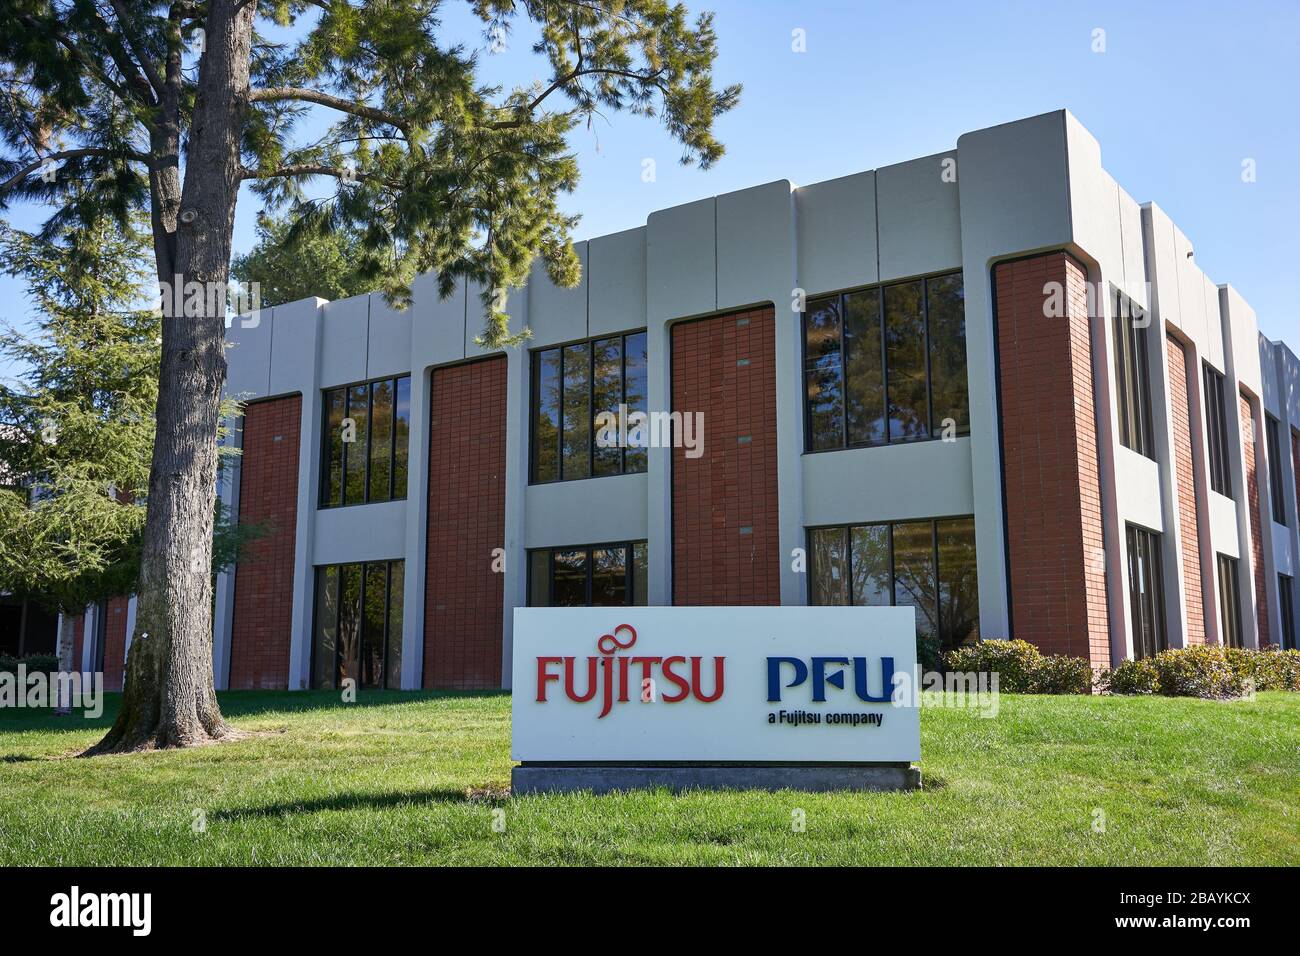 PFU America Hauptsitz in Sunnyvale, Kalifornien. PFU Limited ist ein japanisches IT-Unternehmen und eine hundertprozentige Tochtergesellschaft von Fujitsu. Stockfoto